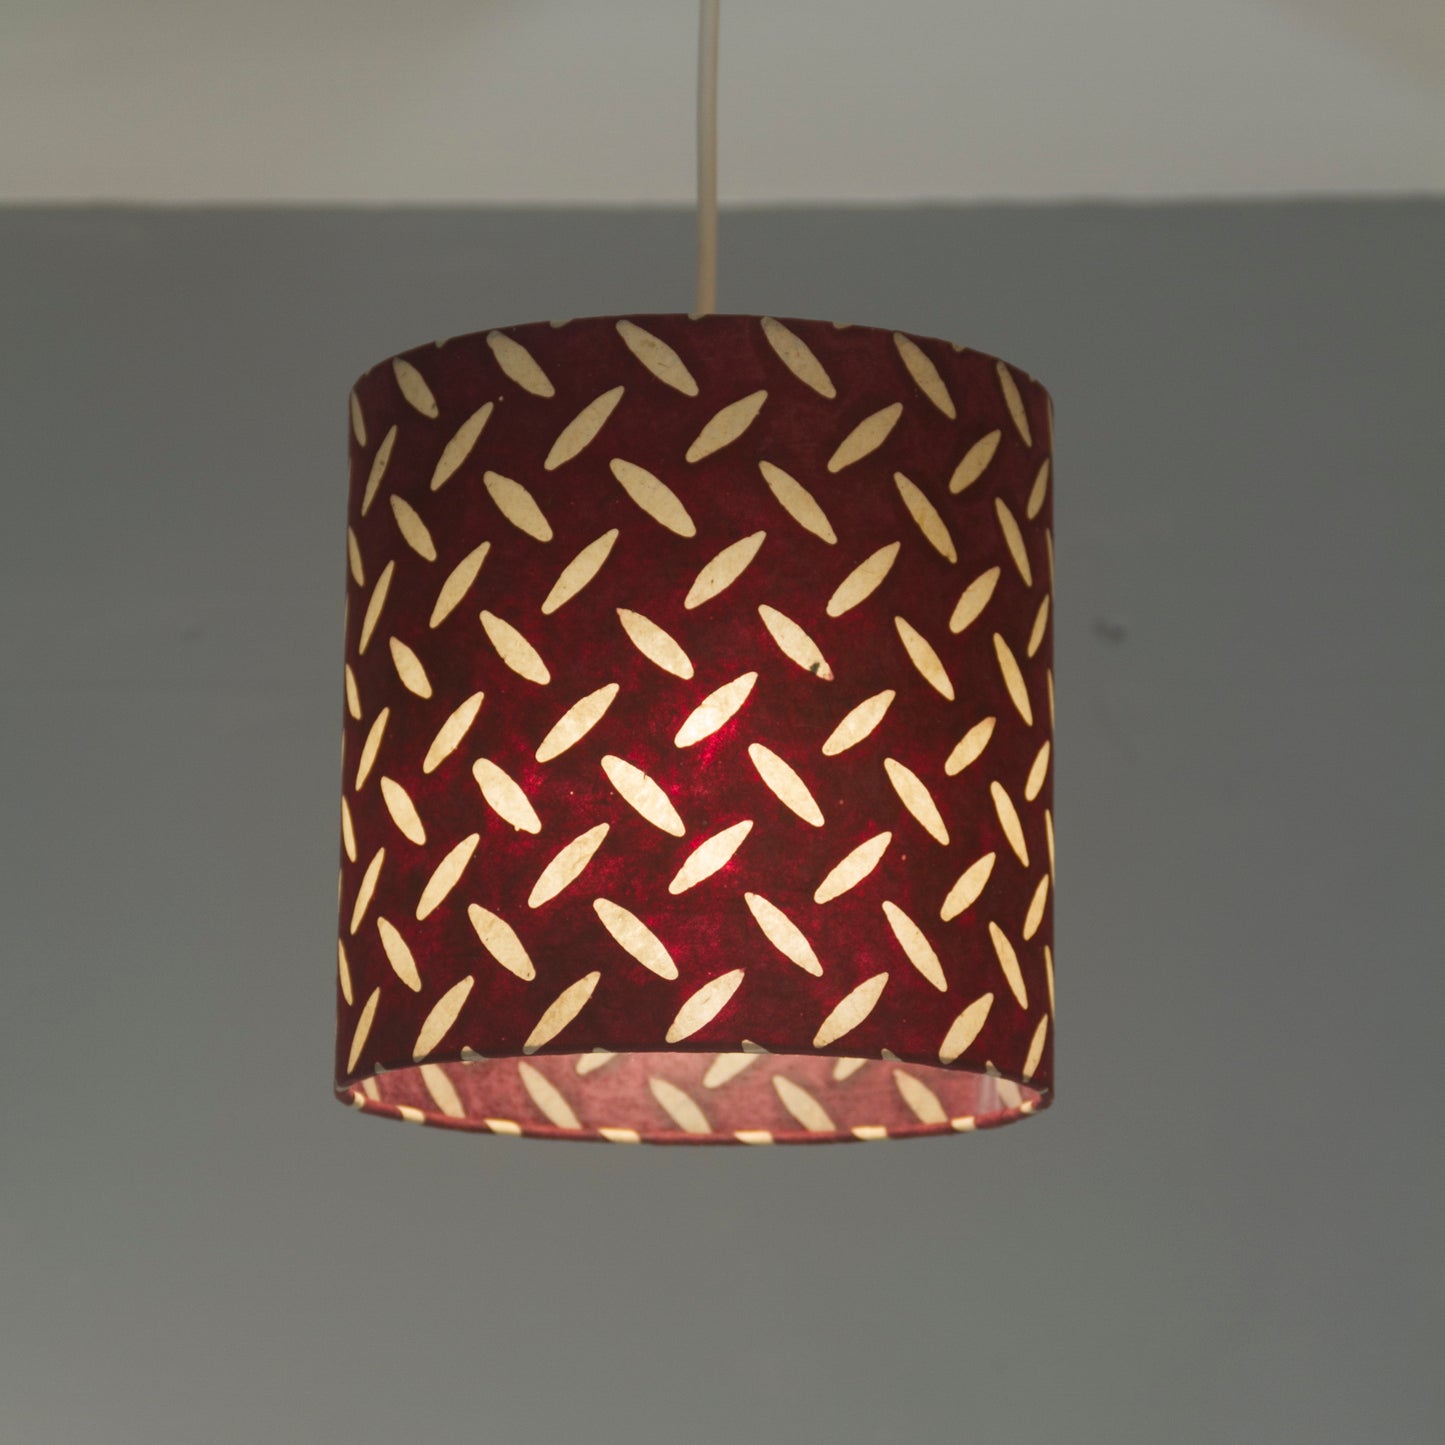 Square Lamp Shade - P14 - Batik Tread Plate Cranberry, 20cm(w) x 30cm(h) x 20cm(d)